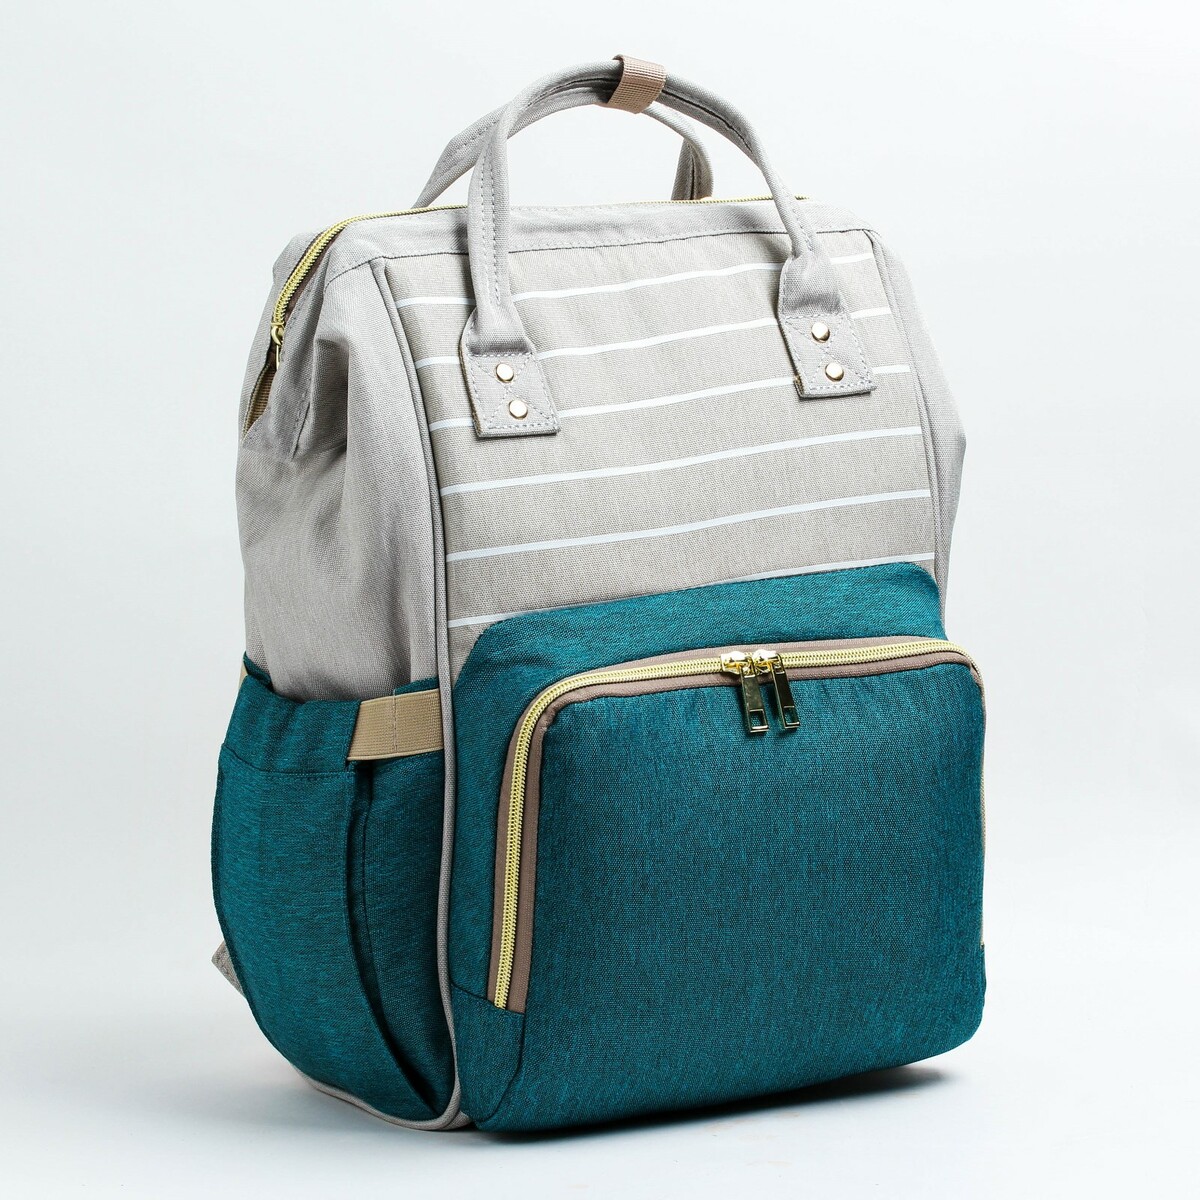 Рюкзак женский с термокарманом, термосумка - портфель, цвет серый/зеленый рюкзак kingkong i 10 wb 9062 черн средний фоторюкзак